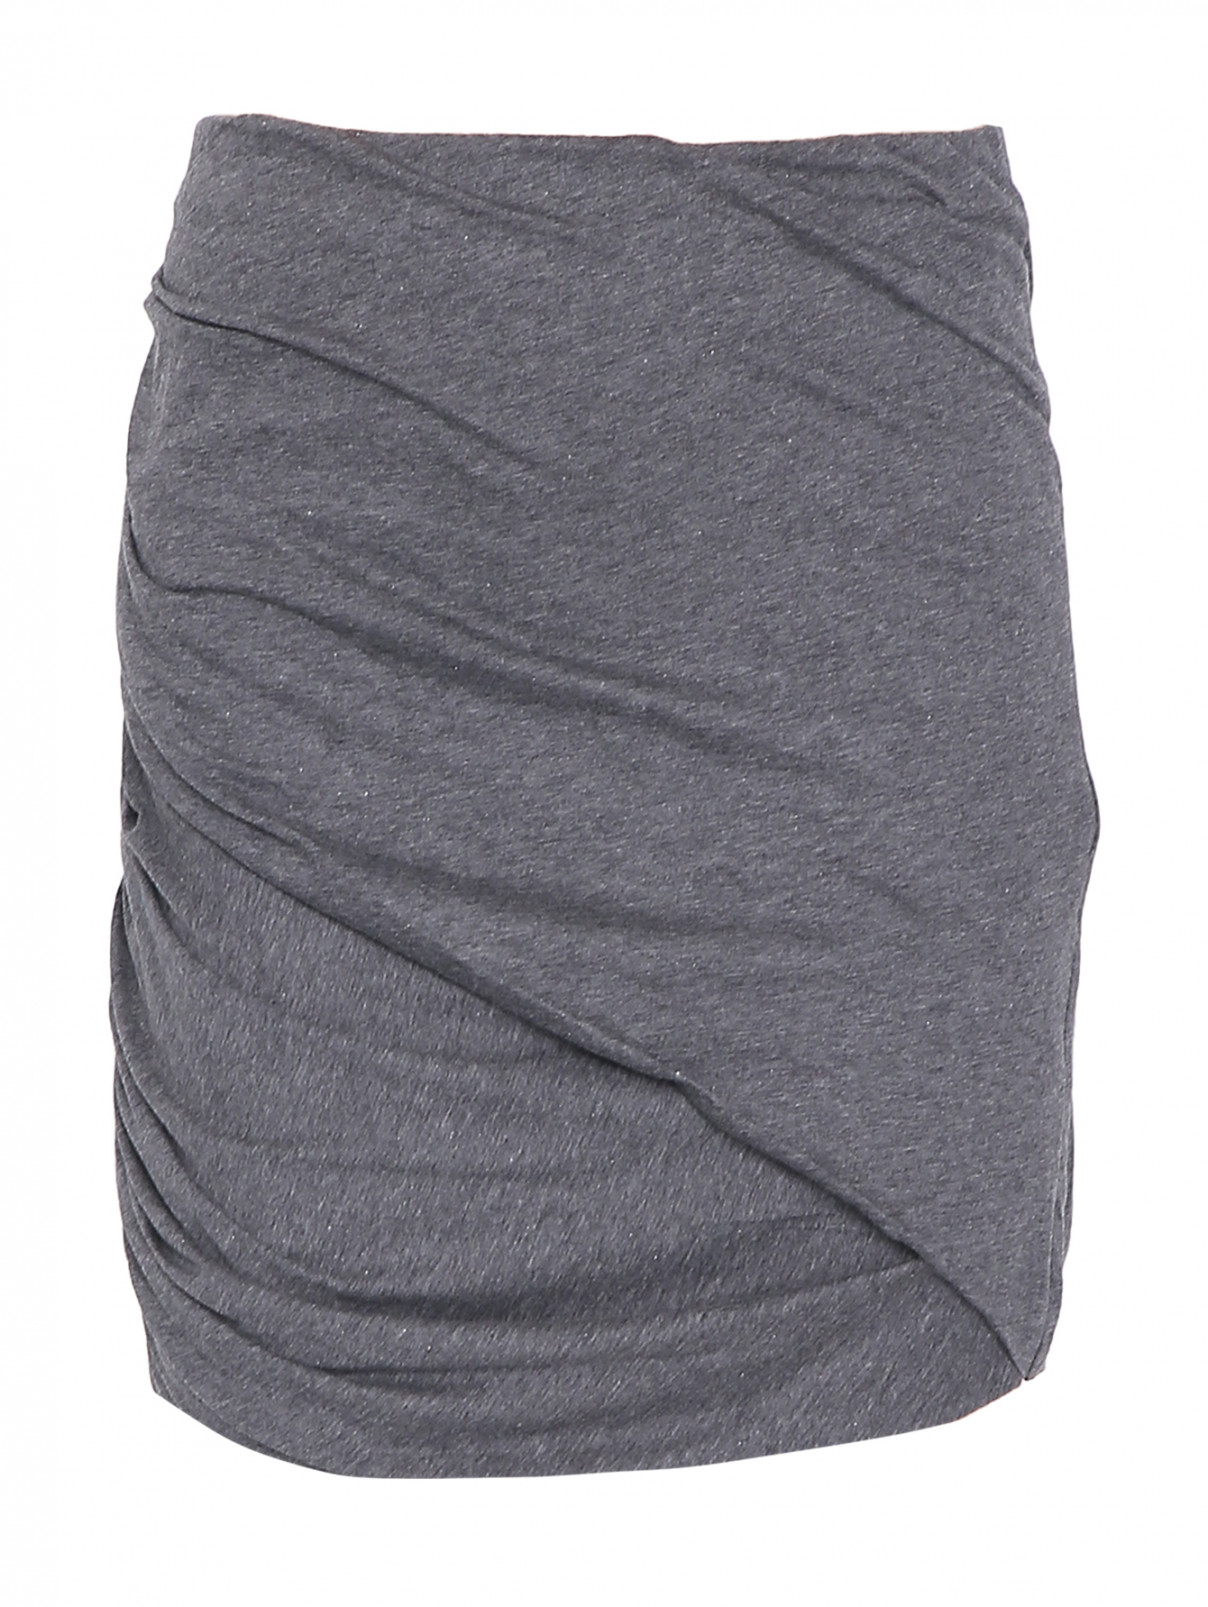 Трикотажная юбка-мини с драпировкой Iro  –  Общий вид  – Цвет:  Серый